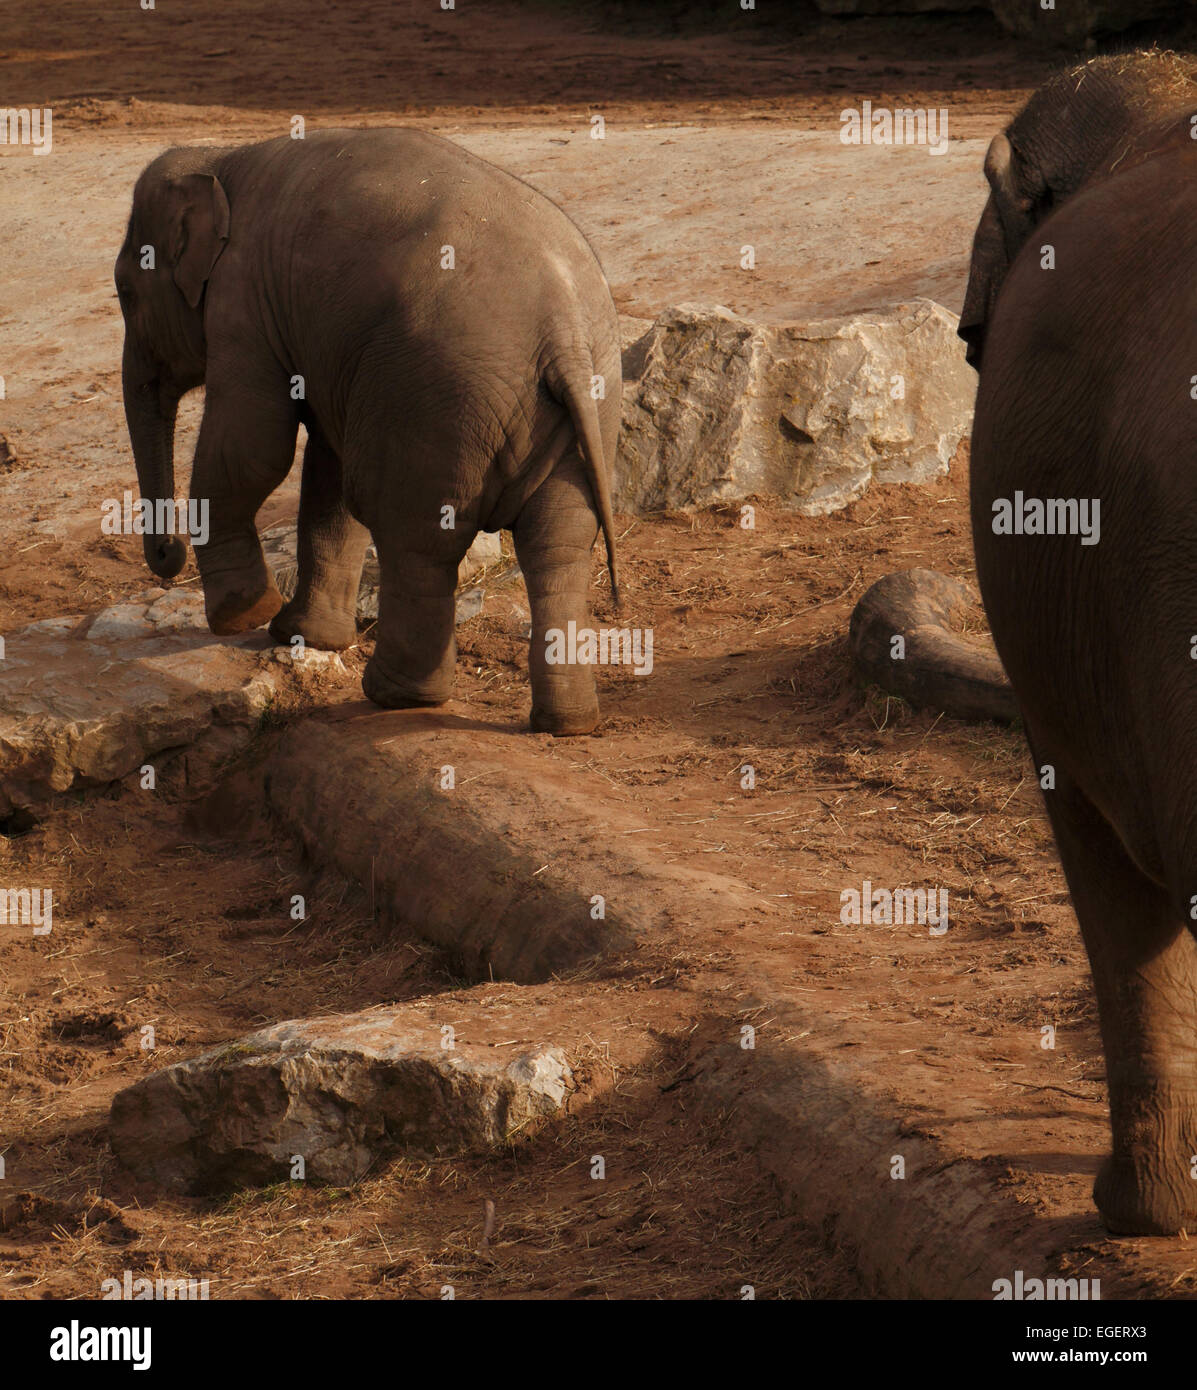 Los elefantes de la pantorrilla. Los elefantes son los grandes mamíferos de la familia Los Elephantidae y la orden Proboscidea Foto de stock